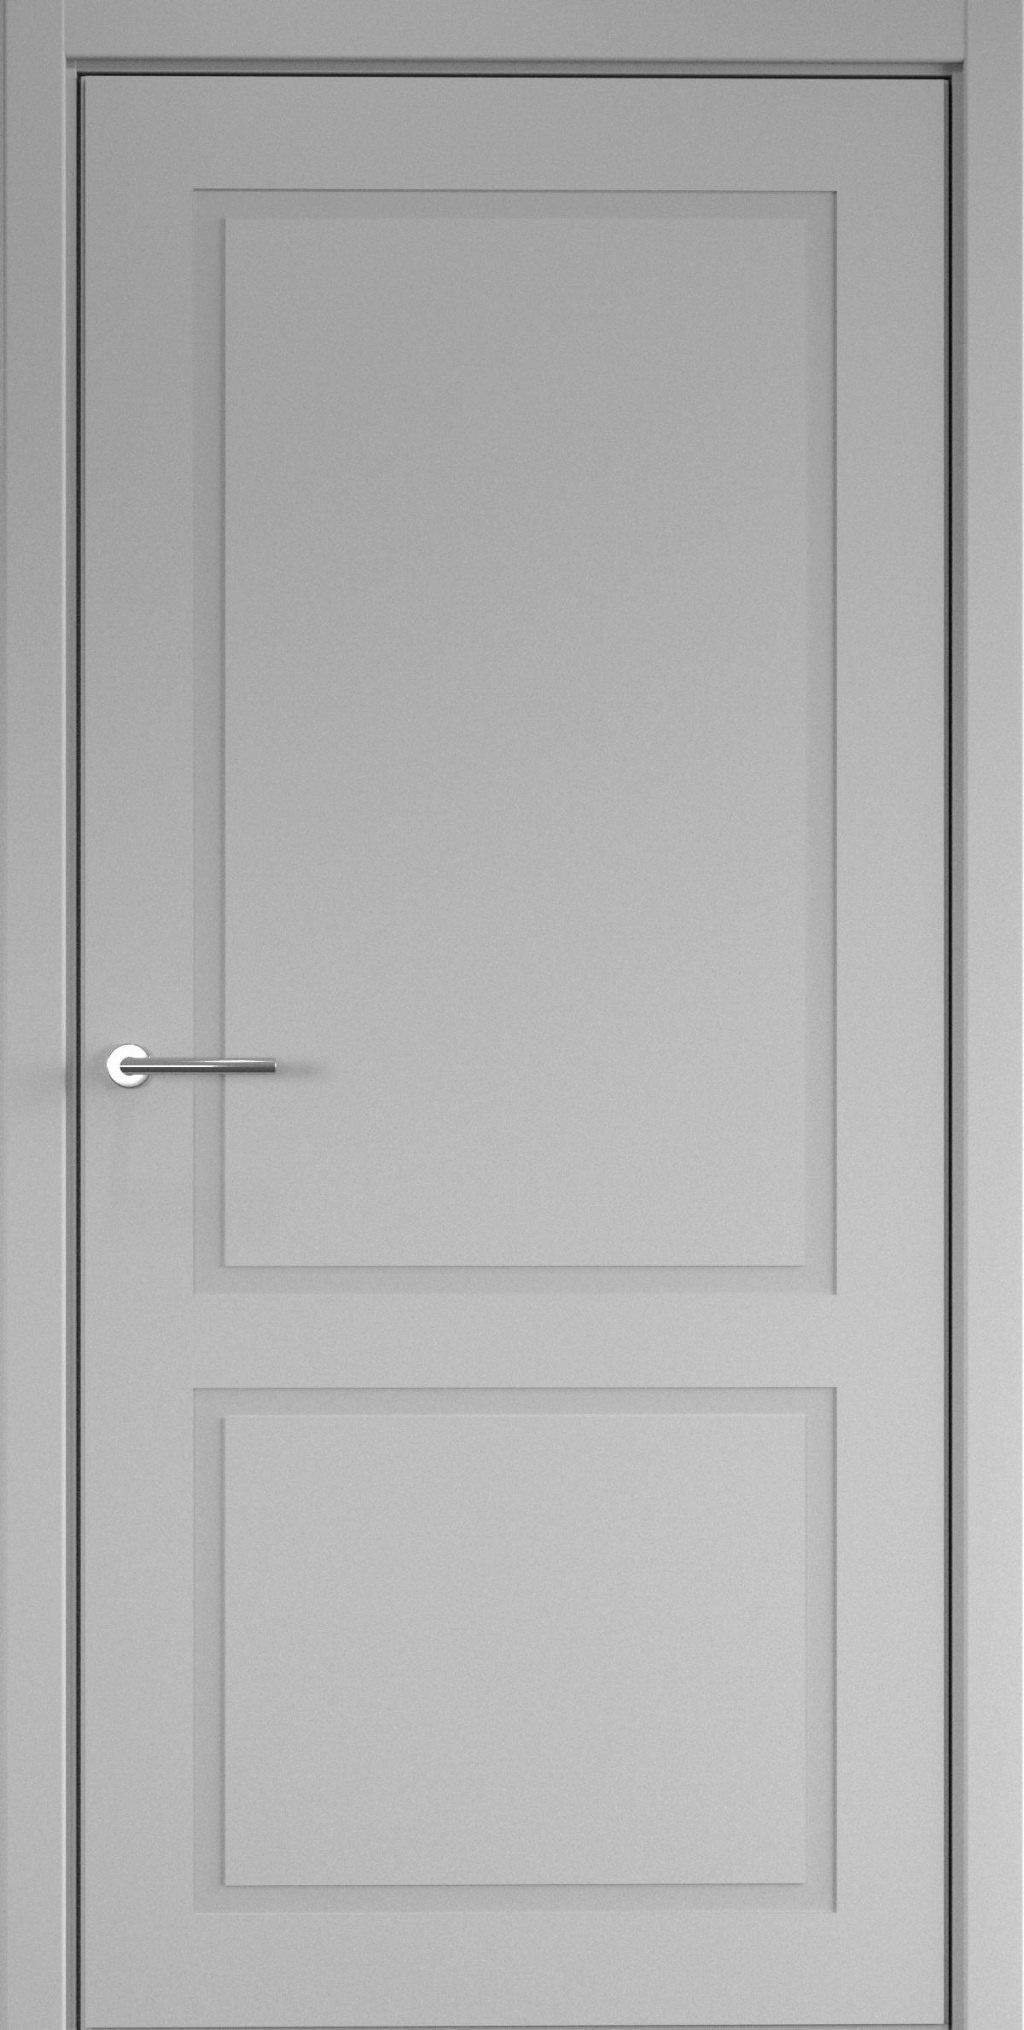 Albero Межкомнатная дверь НеоКлассика-2 магнитный замок в комплекте, арт. 20141 - фото №1